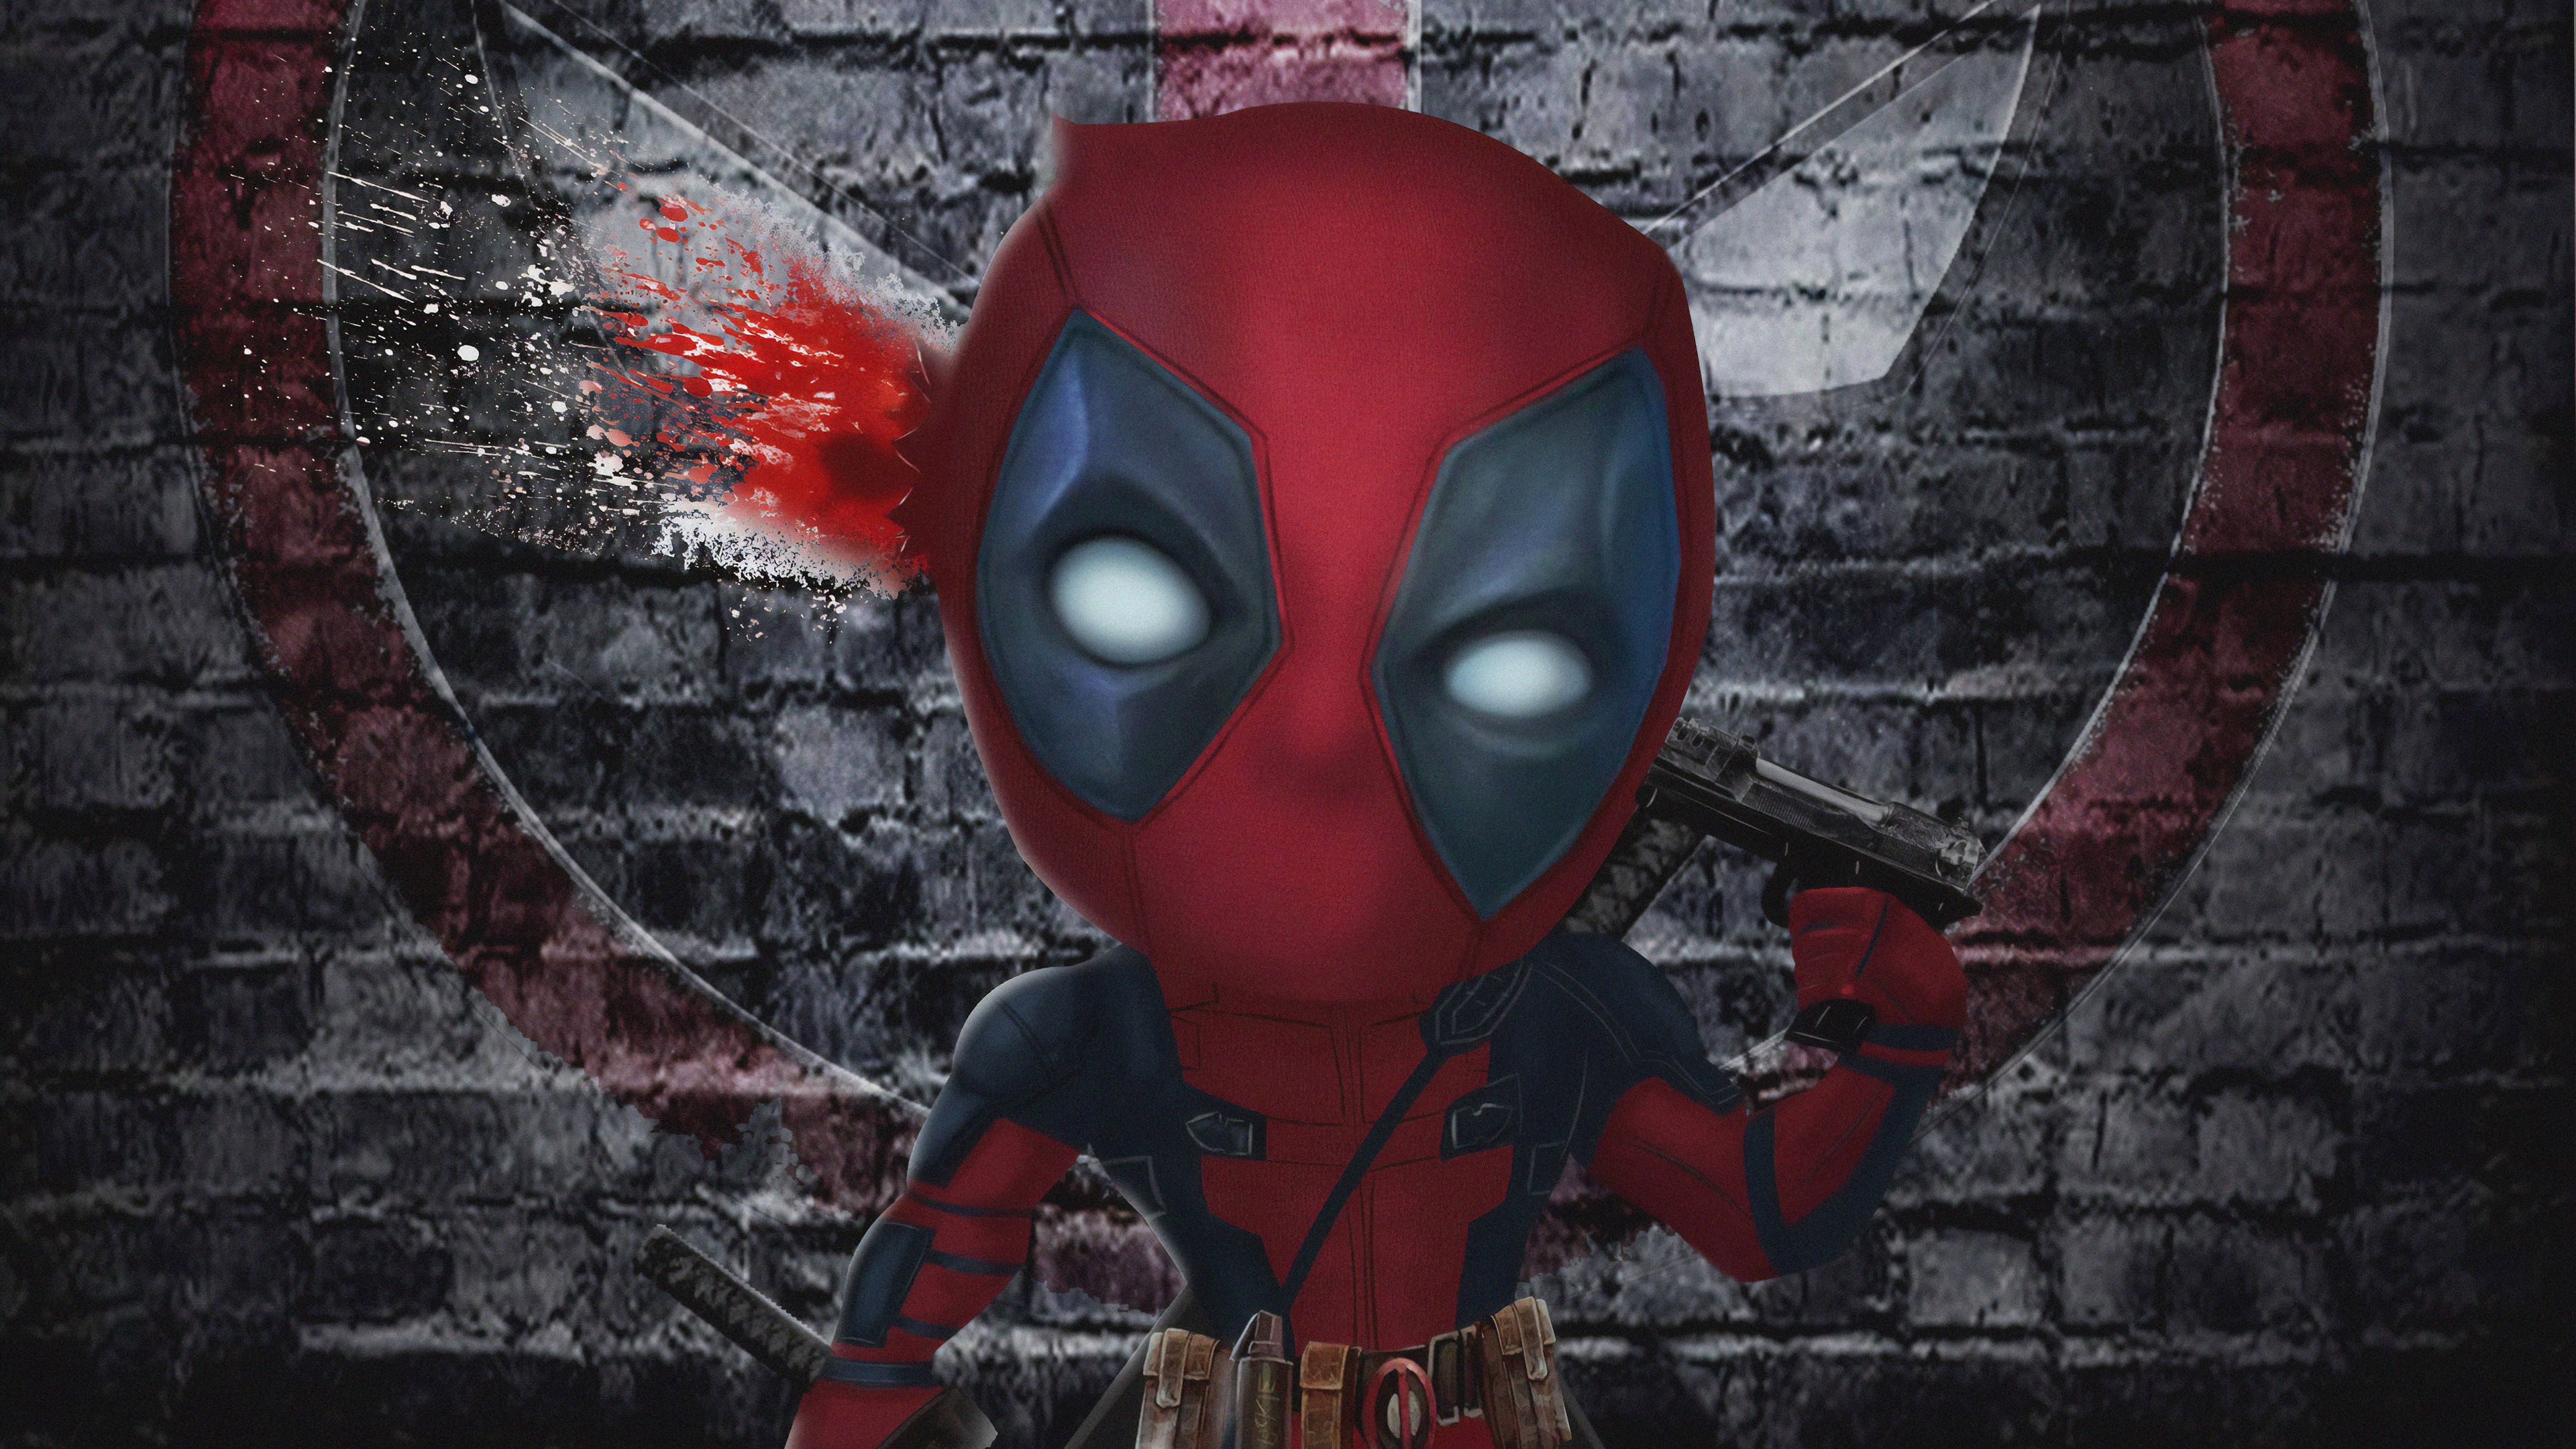 Best For Wallpaper 4k Ultra HD Deadpool Image